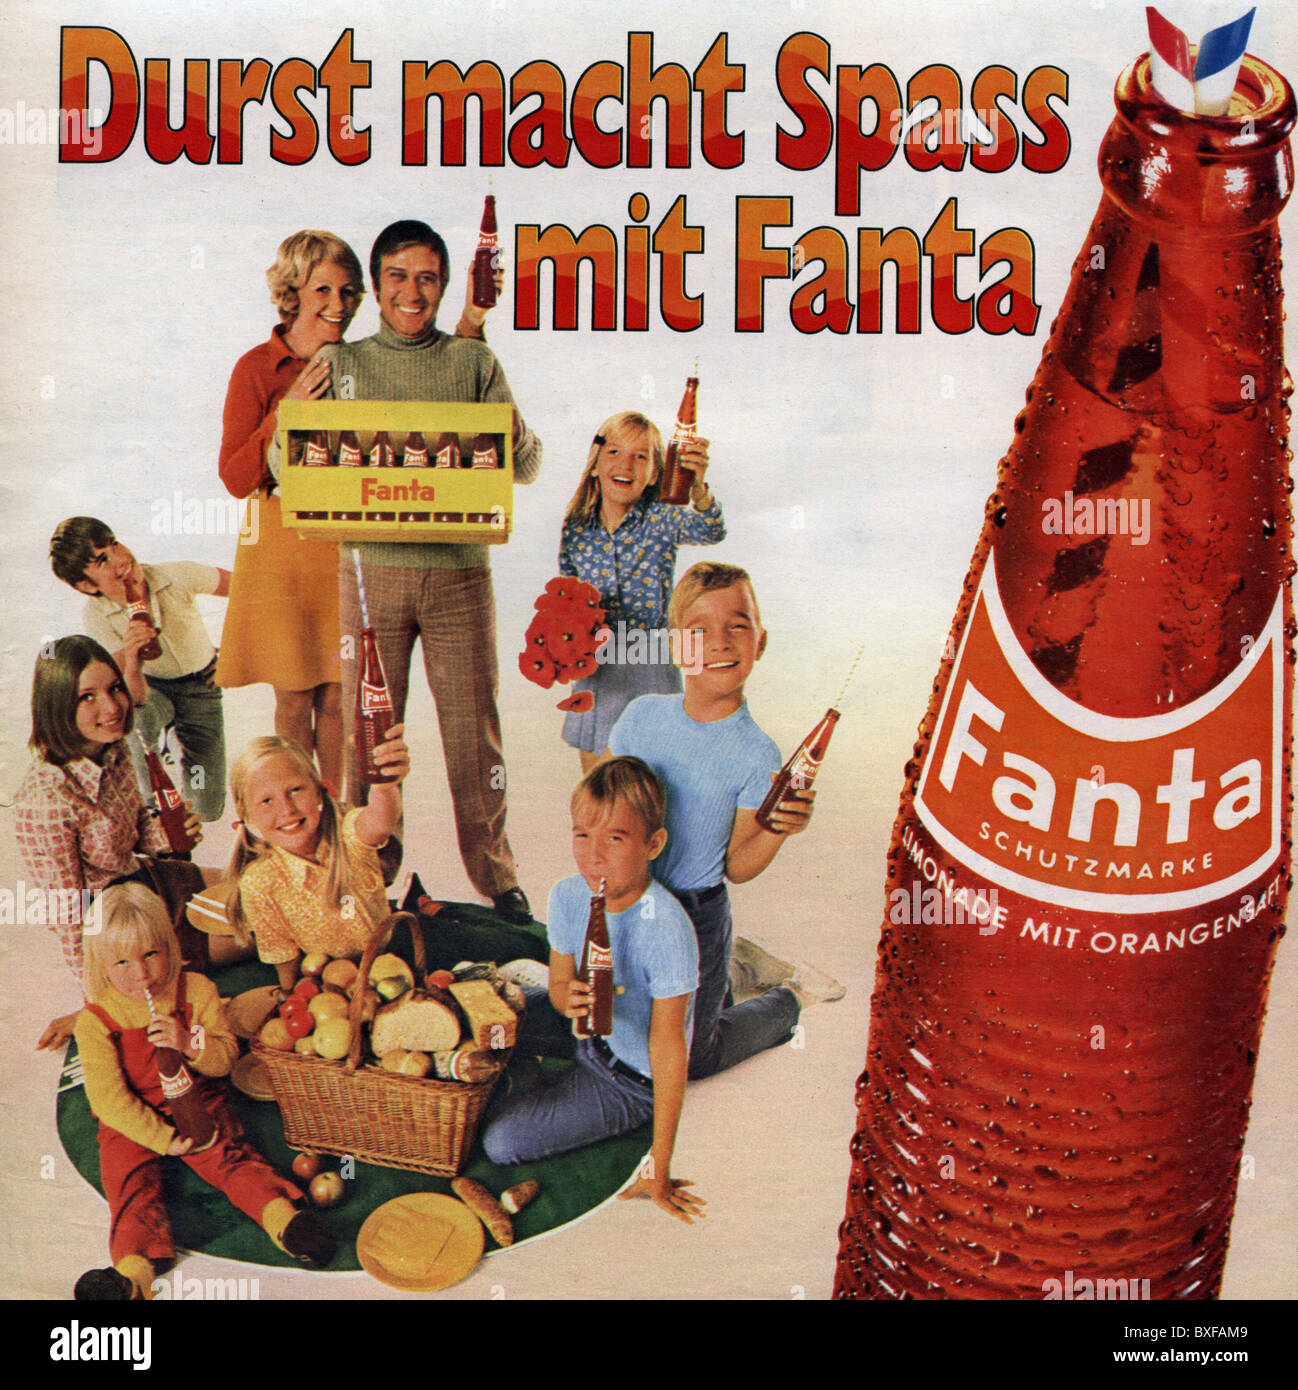 Publicité, boissons, Coca Cola, publicité pour la limonade Fanta, du magazine 'Neue Revue', No. 15, 12.4.1970, Allemagne, droits supplémentaires-Clearences-non disponible Banque D'Images